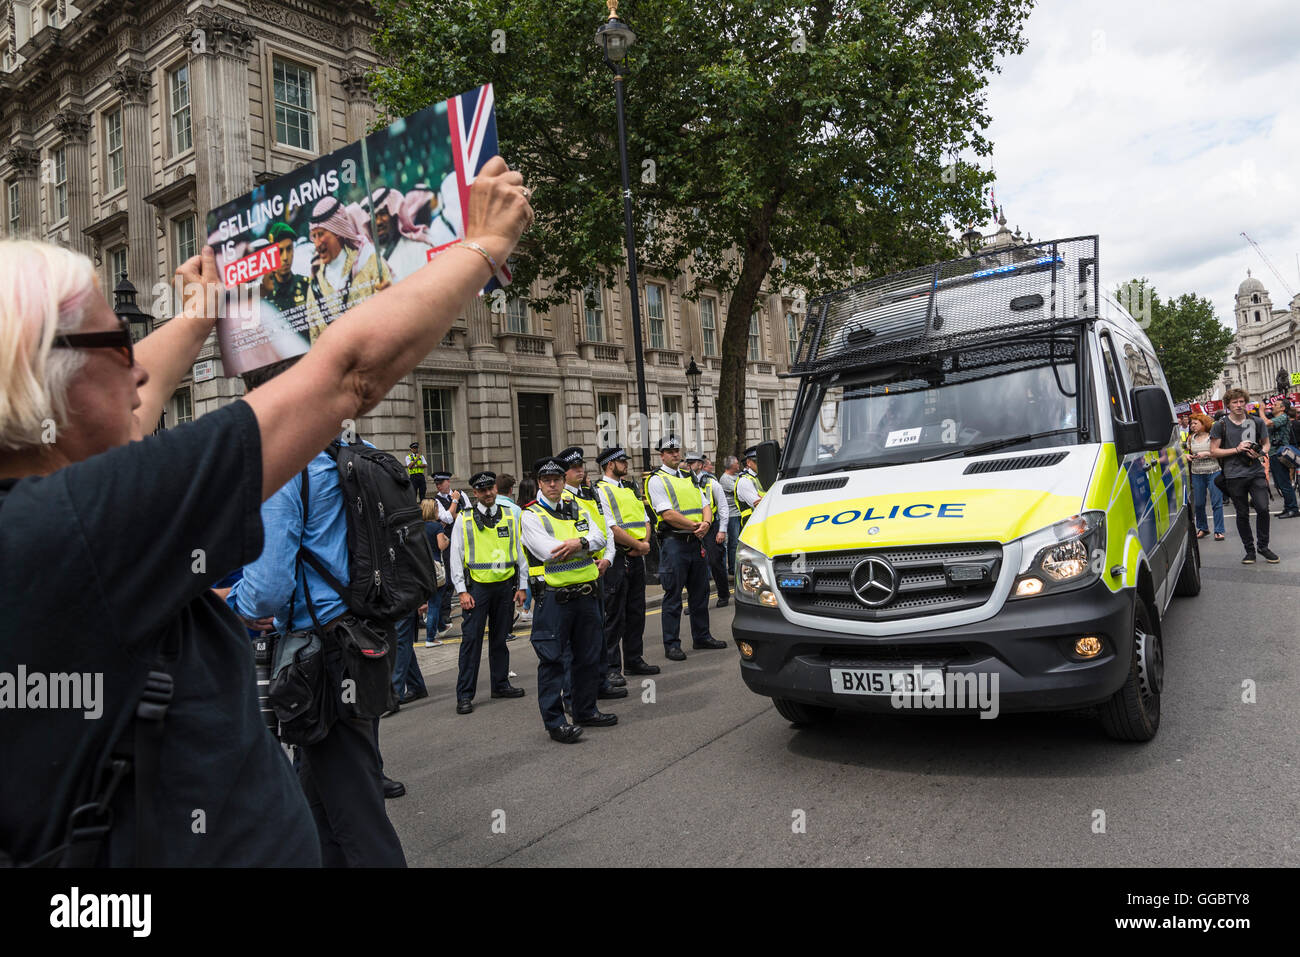 Frau mit Plakat vor Polizei van, nein mehr Sparmaßnahmen - Nein zu Rassismus - Tories müssen gehen, London, Vereinigtes Königreich, UK Stockfoto